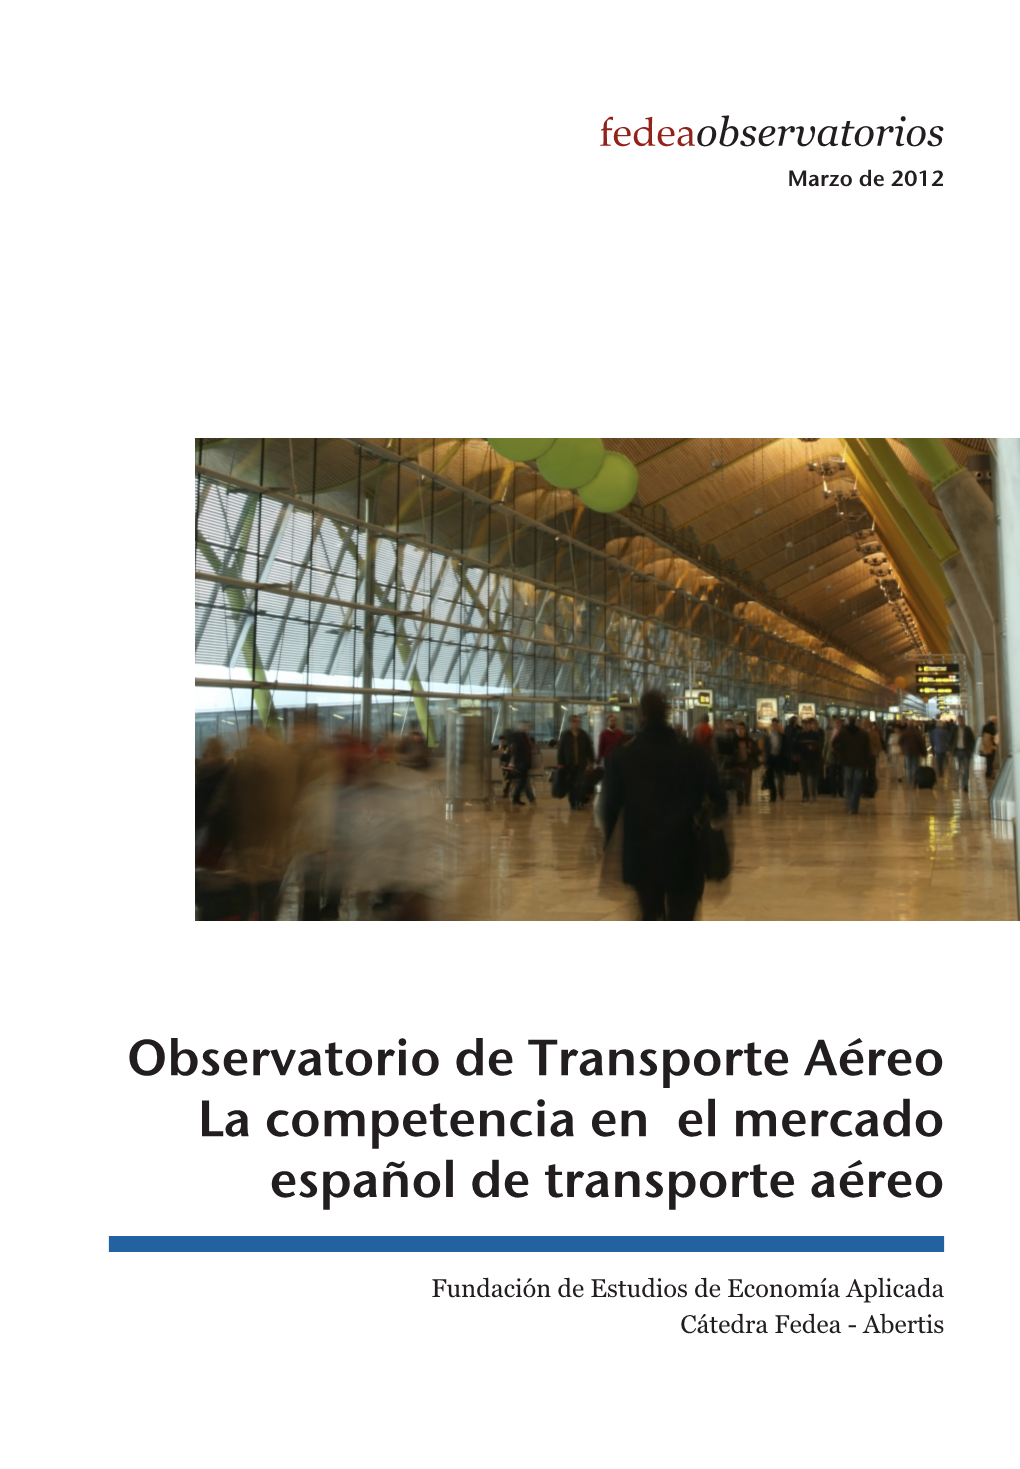 La Competencia En El Mercado Español De Transporte Aéreo